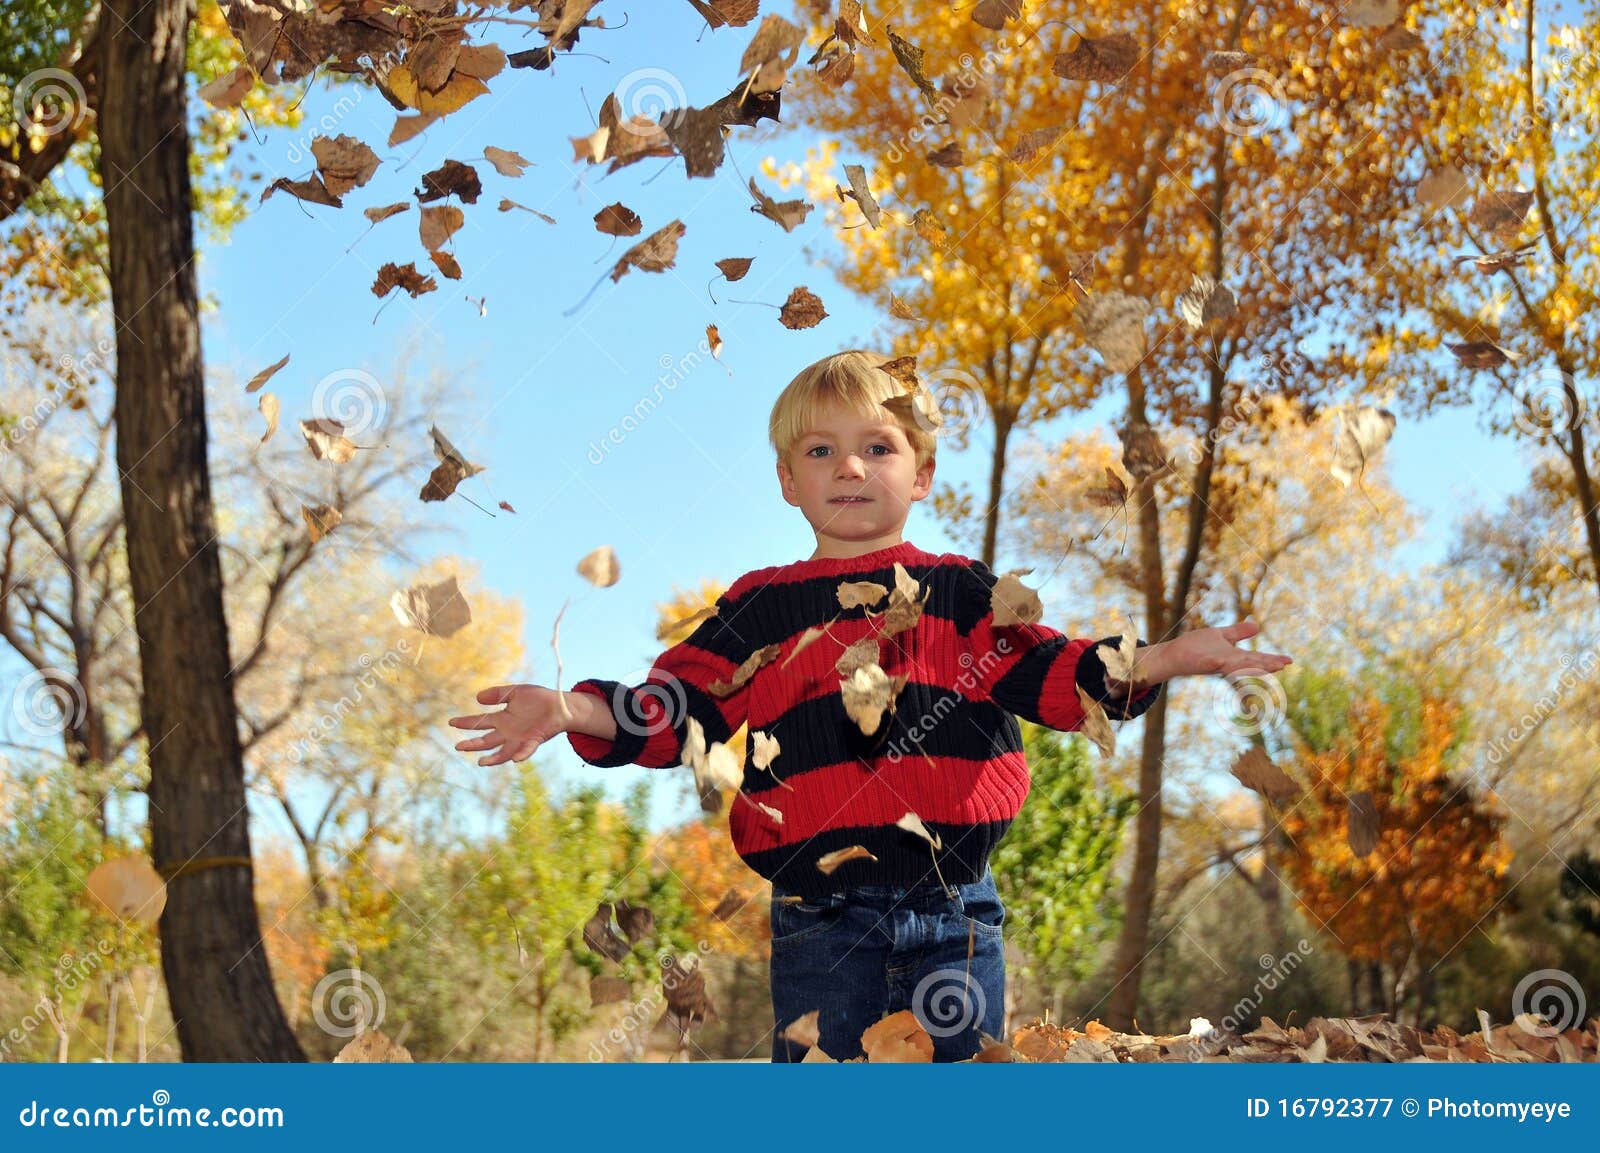 Он любит играть листьями. Игра с листвой осенью. Мальчик играет с листьями осенними. Осенний падала для мальчиков. Детская радость при падении листьев.